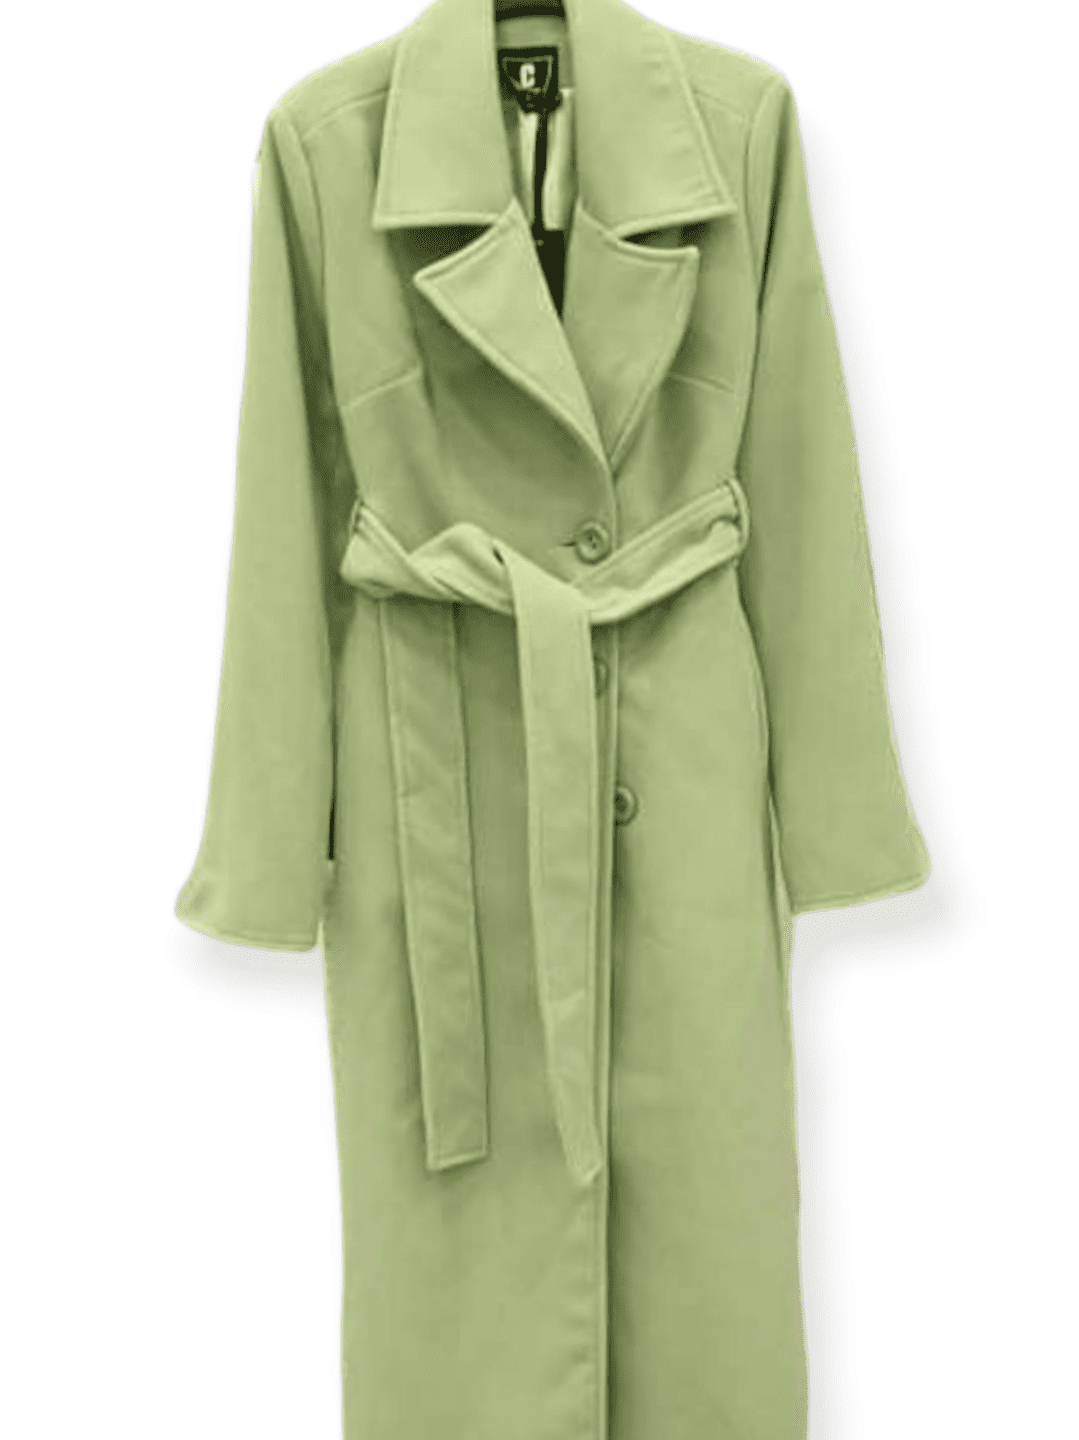 Μακρύ γυναικείο παλτό σε πράσινο μέντα